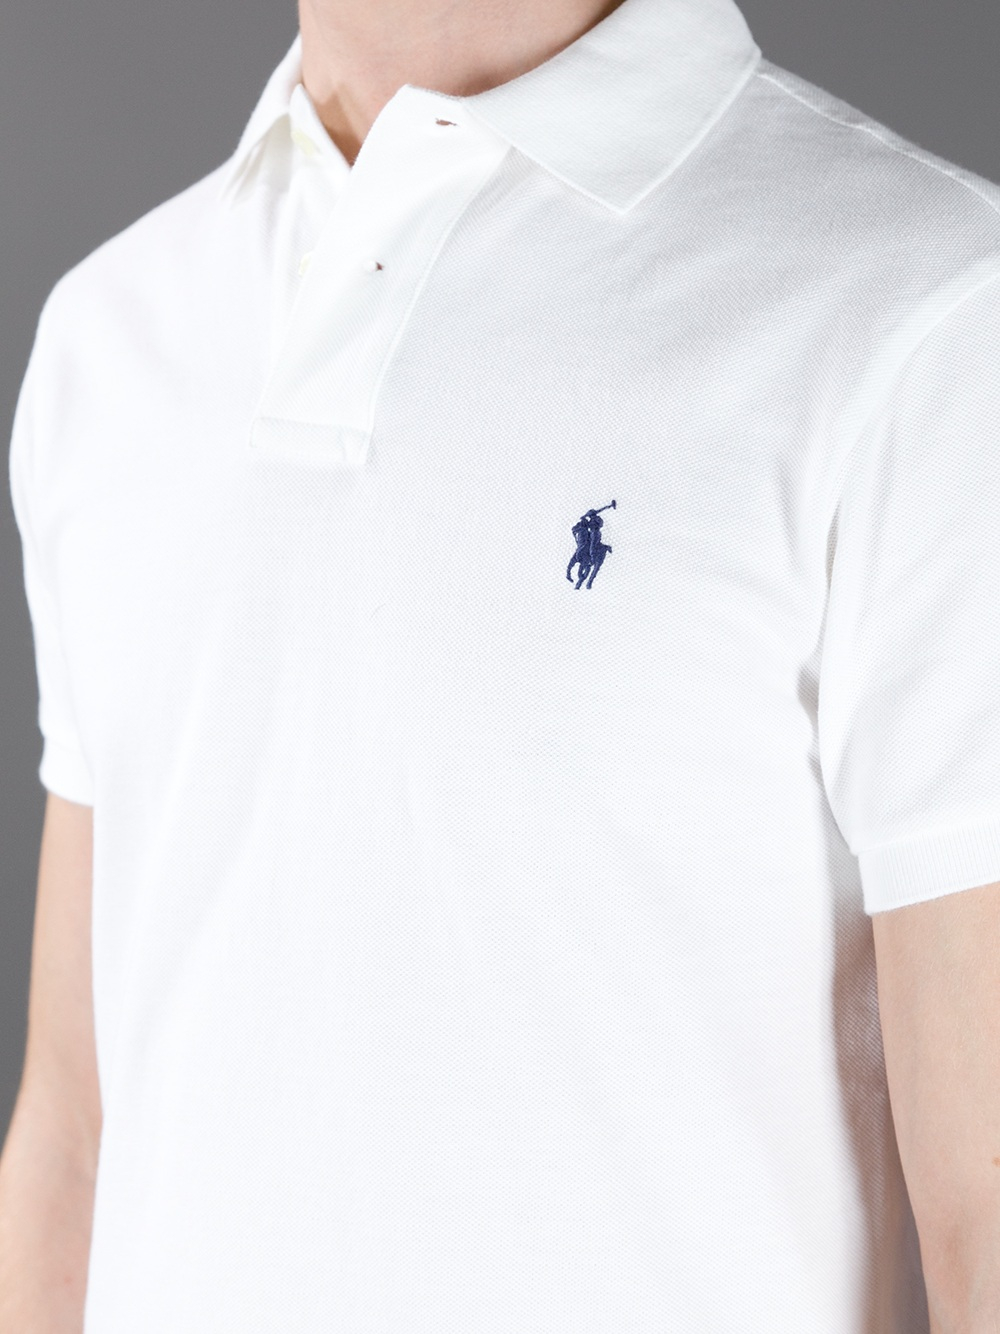 Lyst - Polo Ralph Lauren Polo Shirt in White for Men